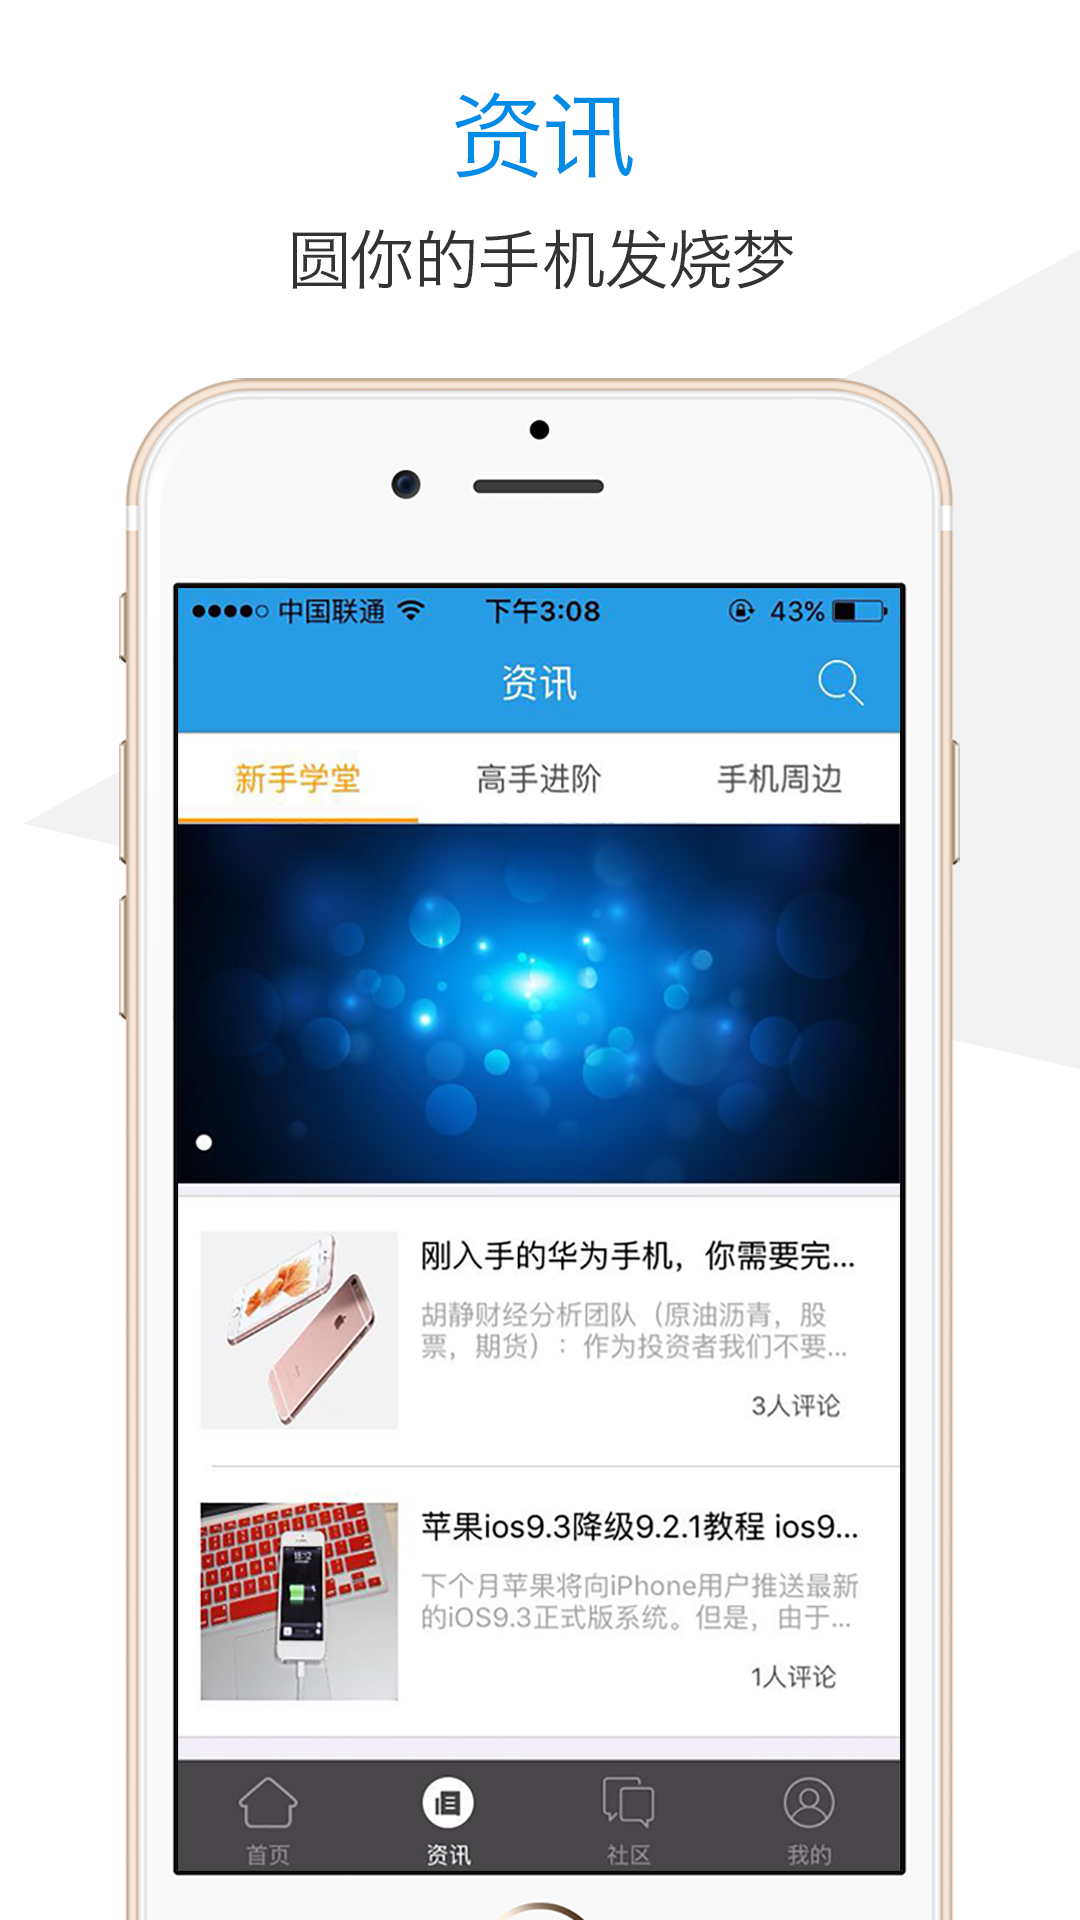 fulao2官方app下载 父老2安装包破解版下载